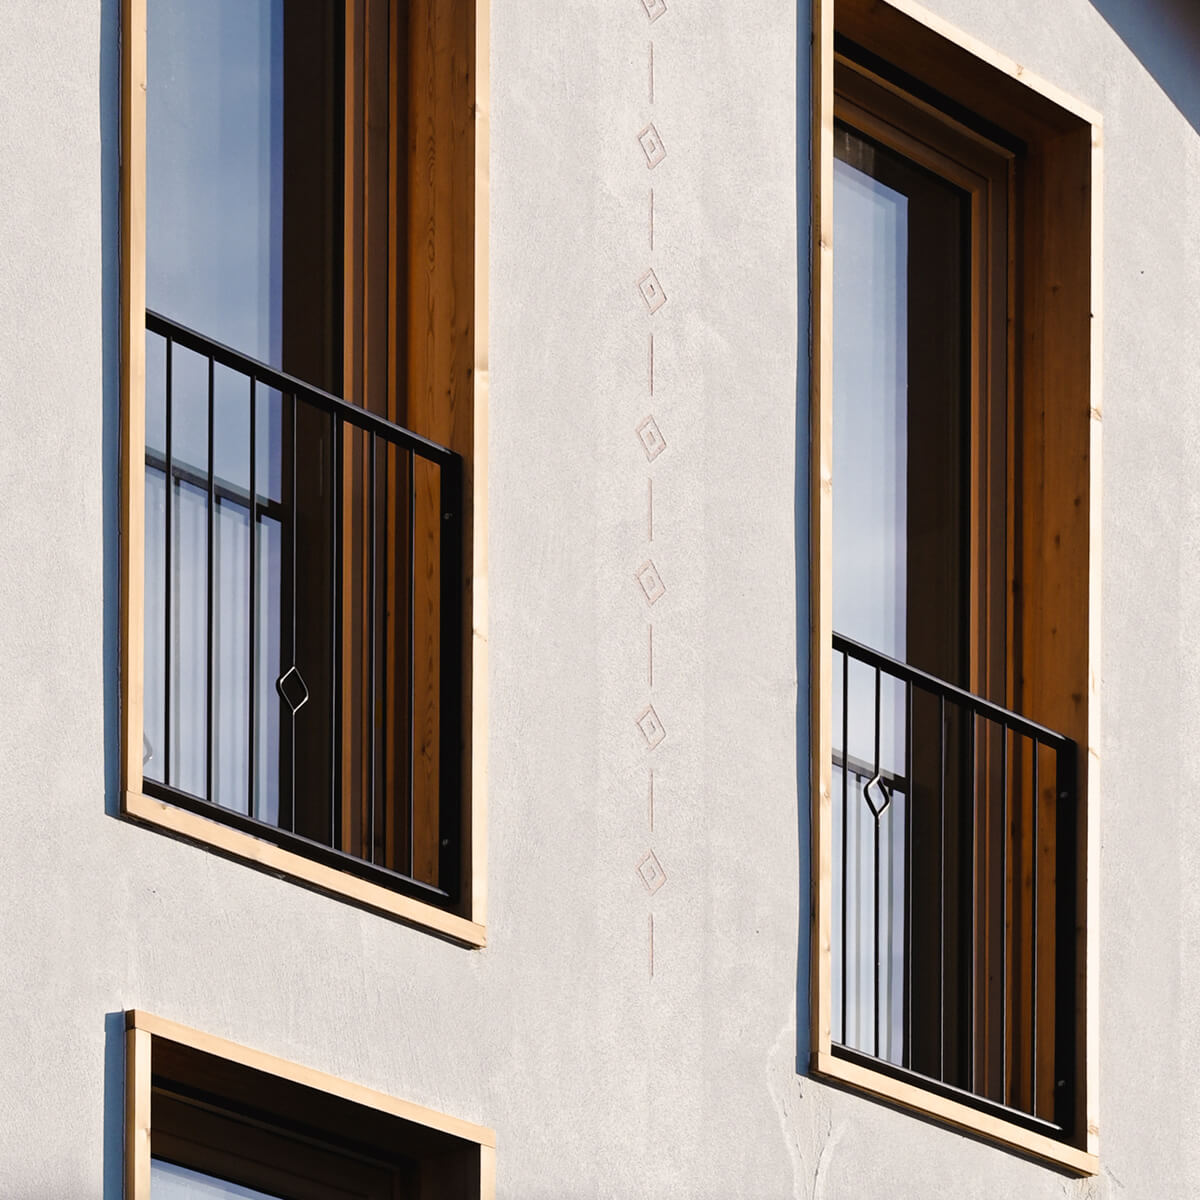 Büro und Wohnen Brändli Gioia Architekten - Igis - Fassade mit Sgraffito